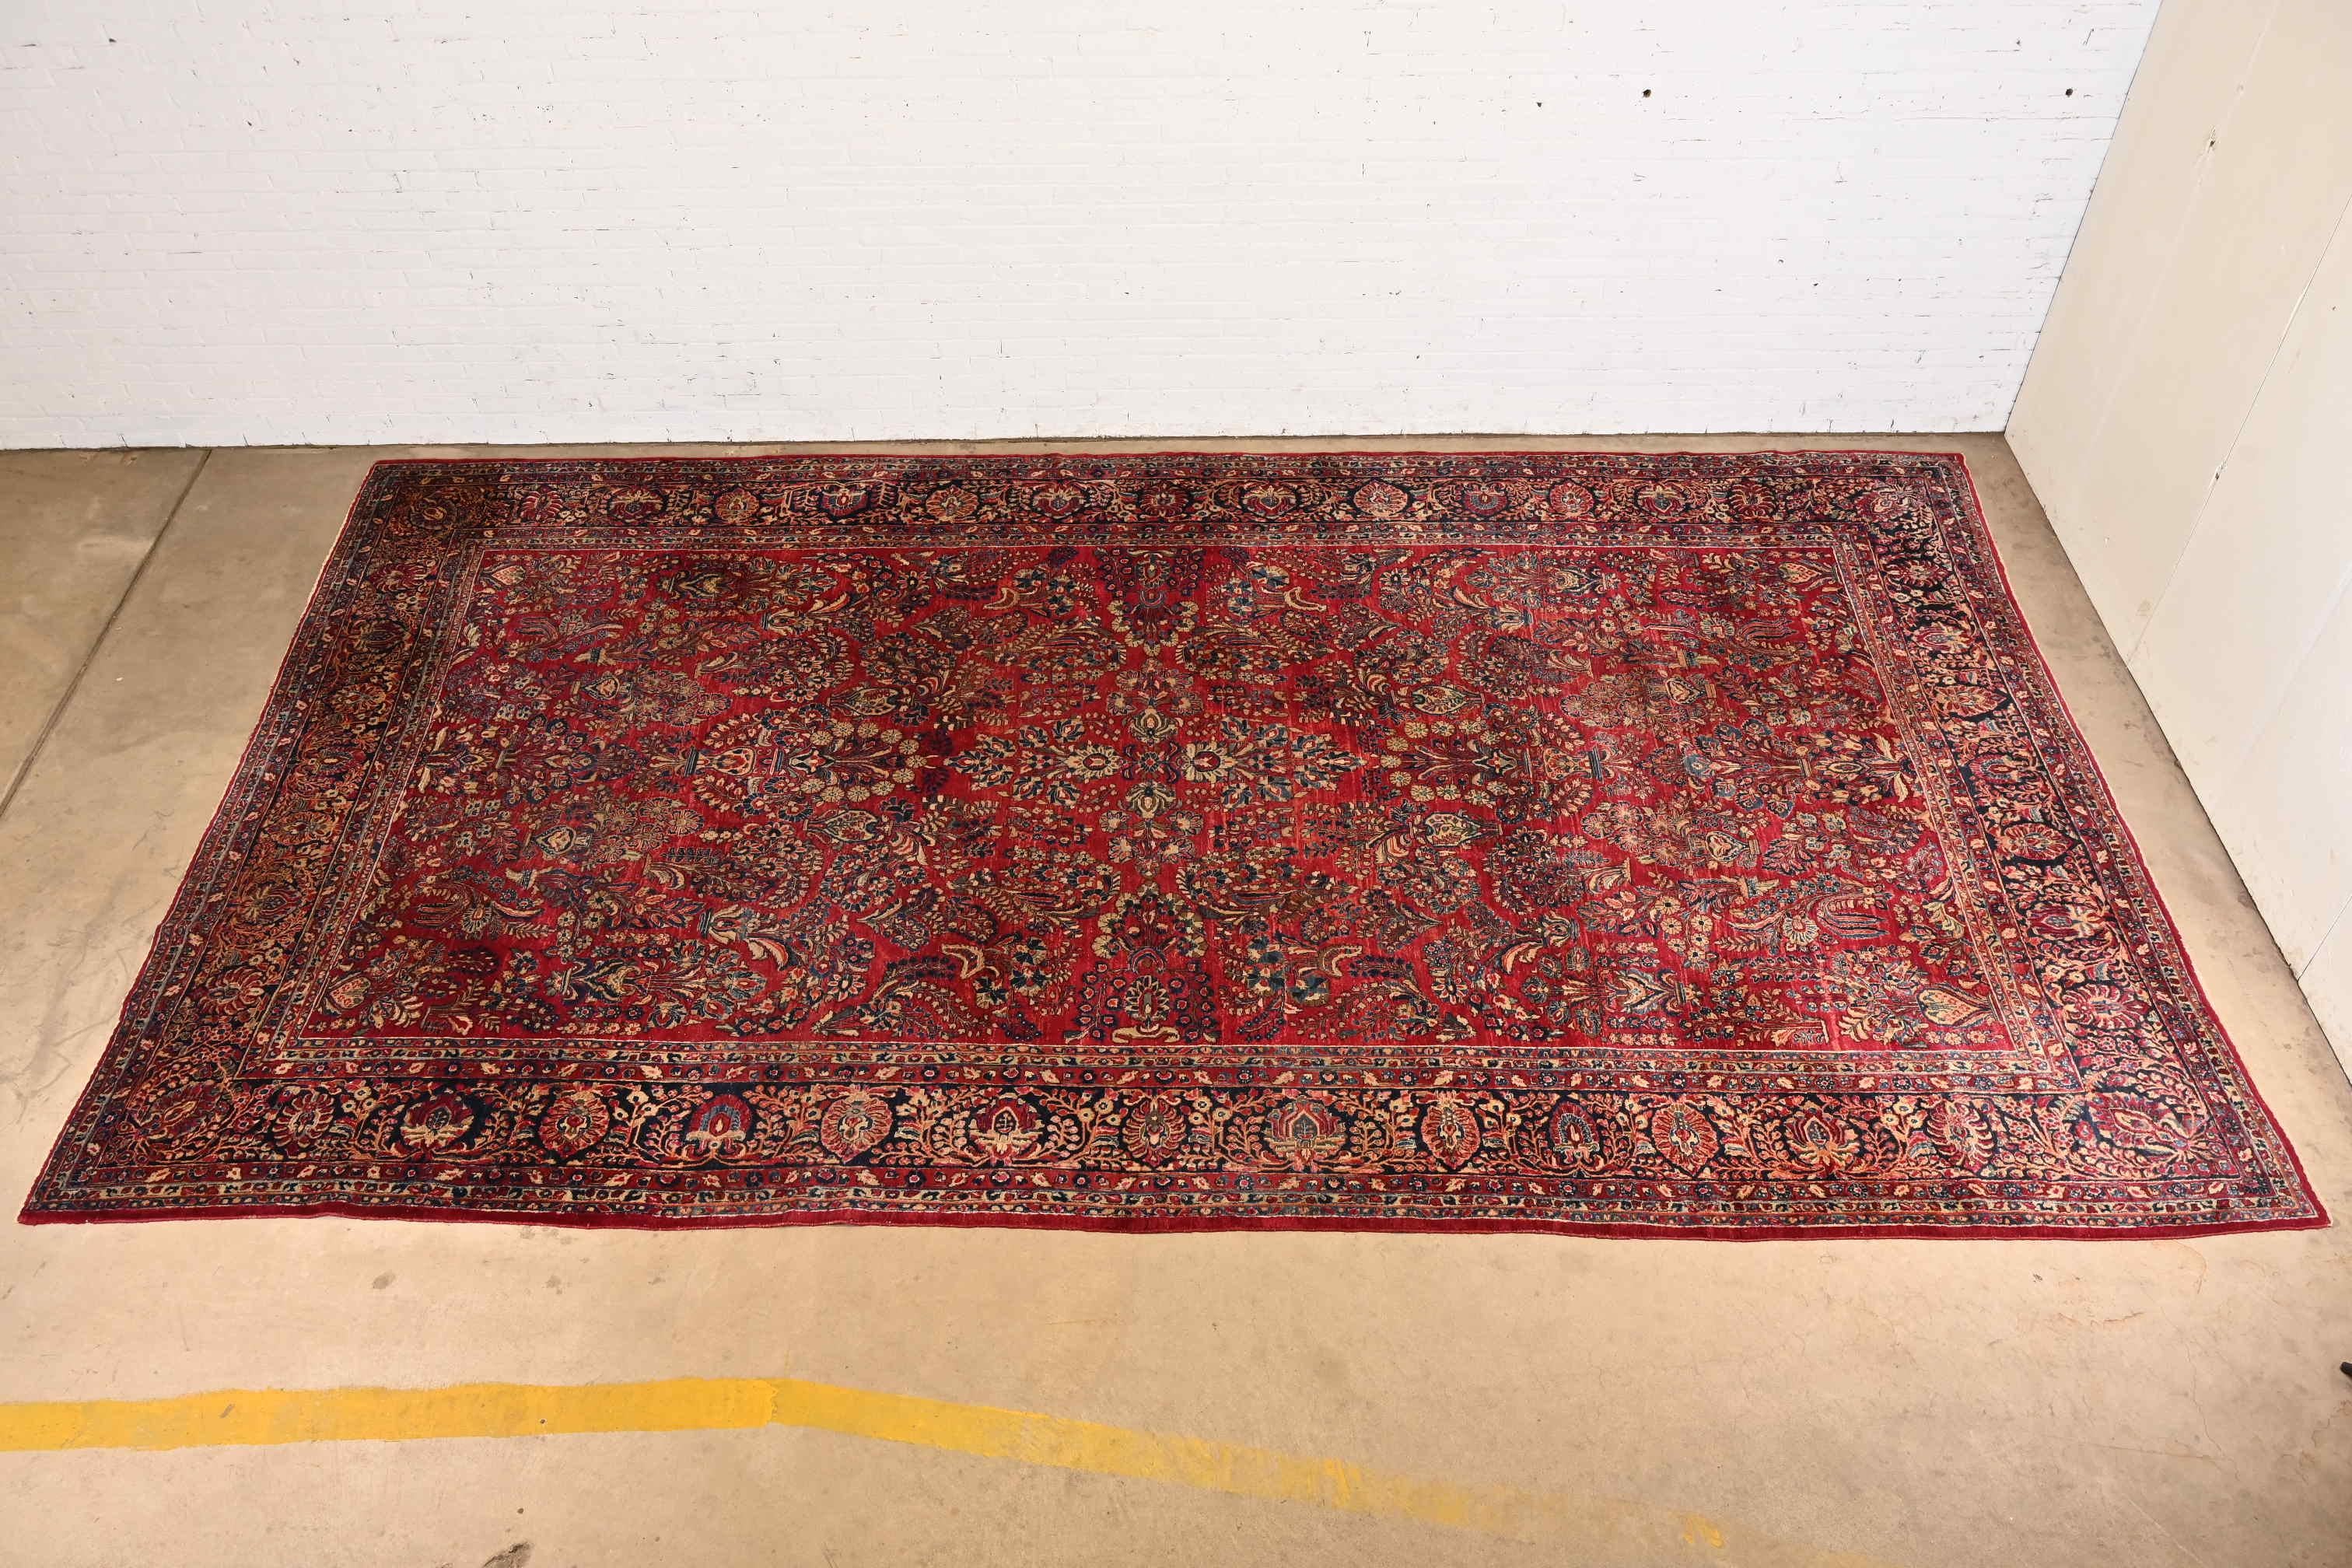 Ein prächtiger antiker persischer Sarouk-Teppich für große Räume

CIRCA 1930er Jahre

Sie bietet wunderschöne traditionelle Blumensträuße und Bouquets mit den vorherrschenden Farben Rot, Blau und Elfenbein.

Maße: 10'2